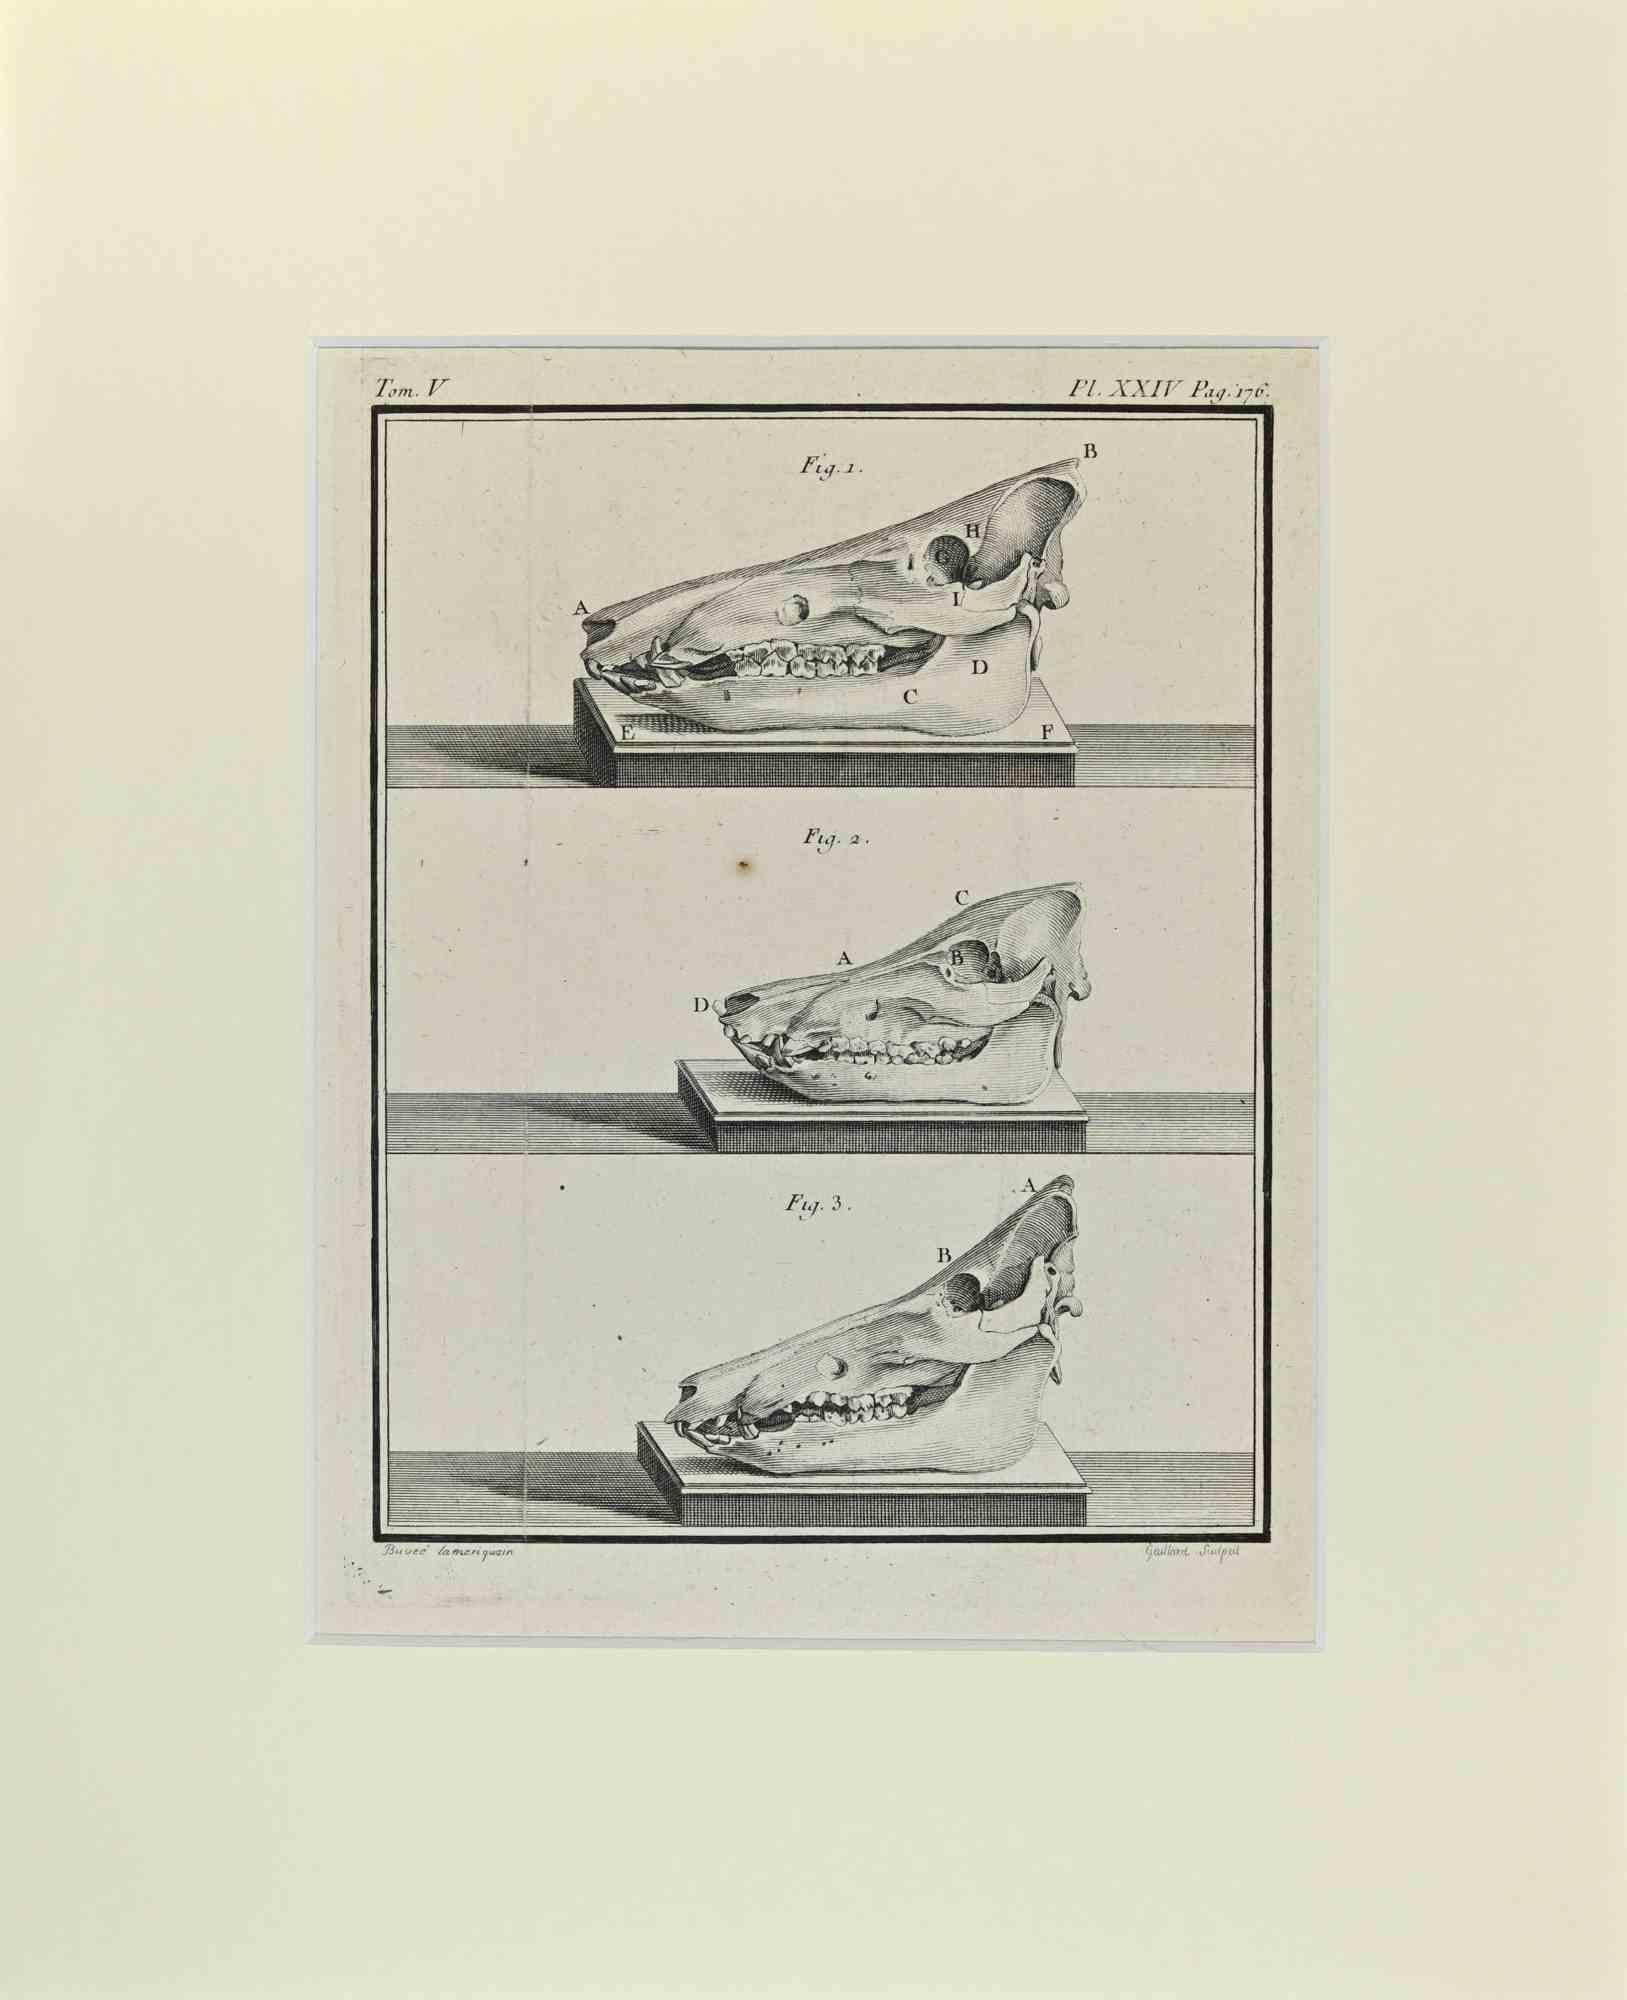 Le Buffle est une œuvre d'art réalisée par Buvée l'Américain en 1771.  

Gravure à l'eau-forte B./W. sur papier ivoire. Signé sur la plaque dans la marge inférieure gauche.

L'œuvre est collée sur du carton. Dimensions totales : 35x28 cm.

L'oeuvre